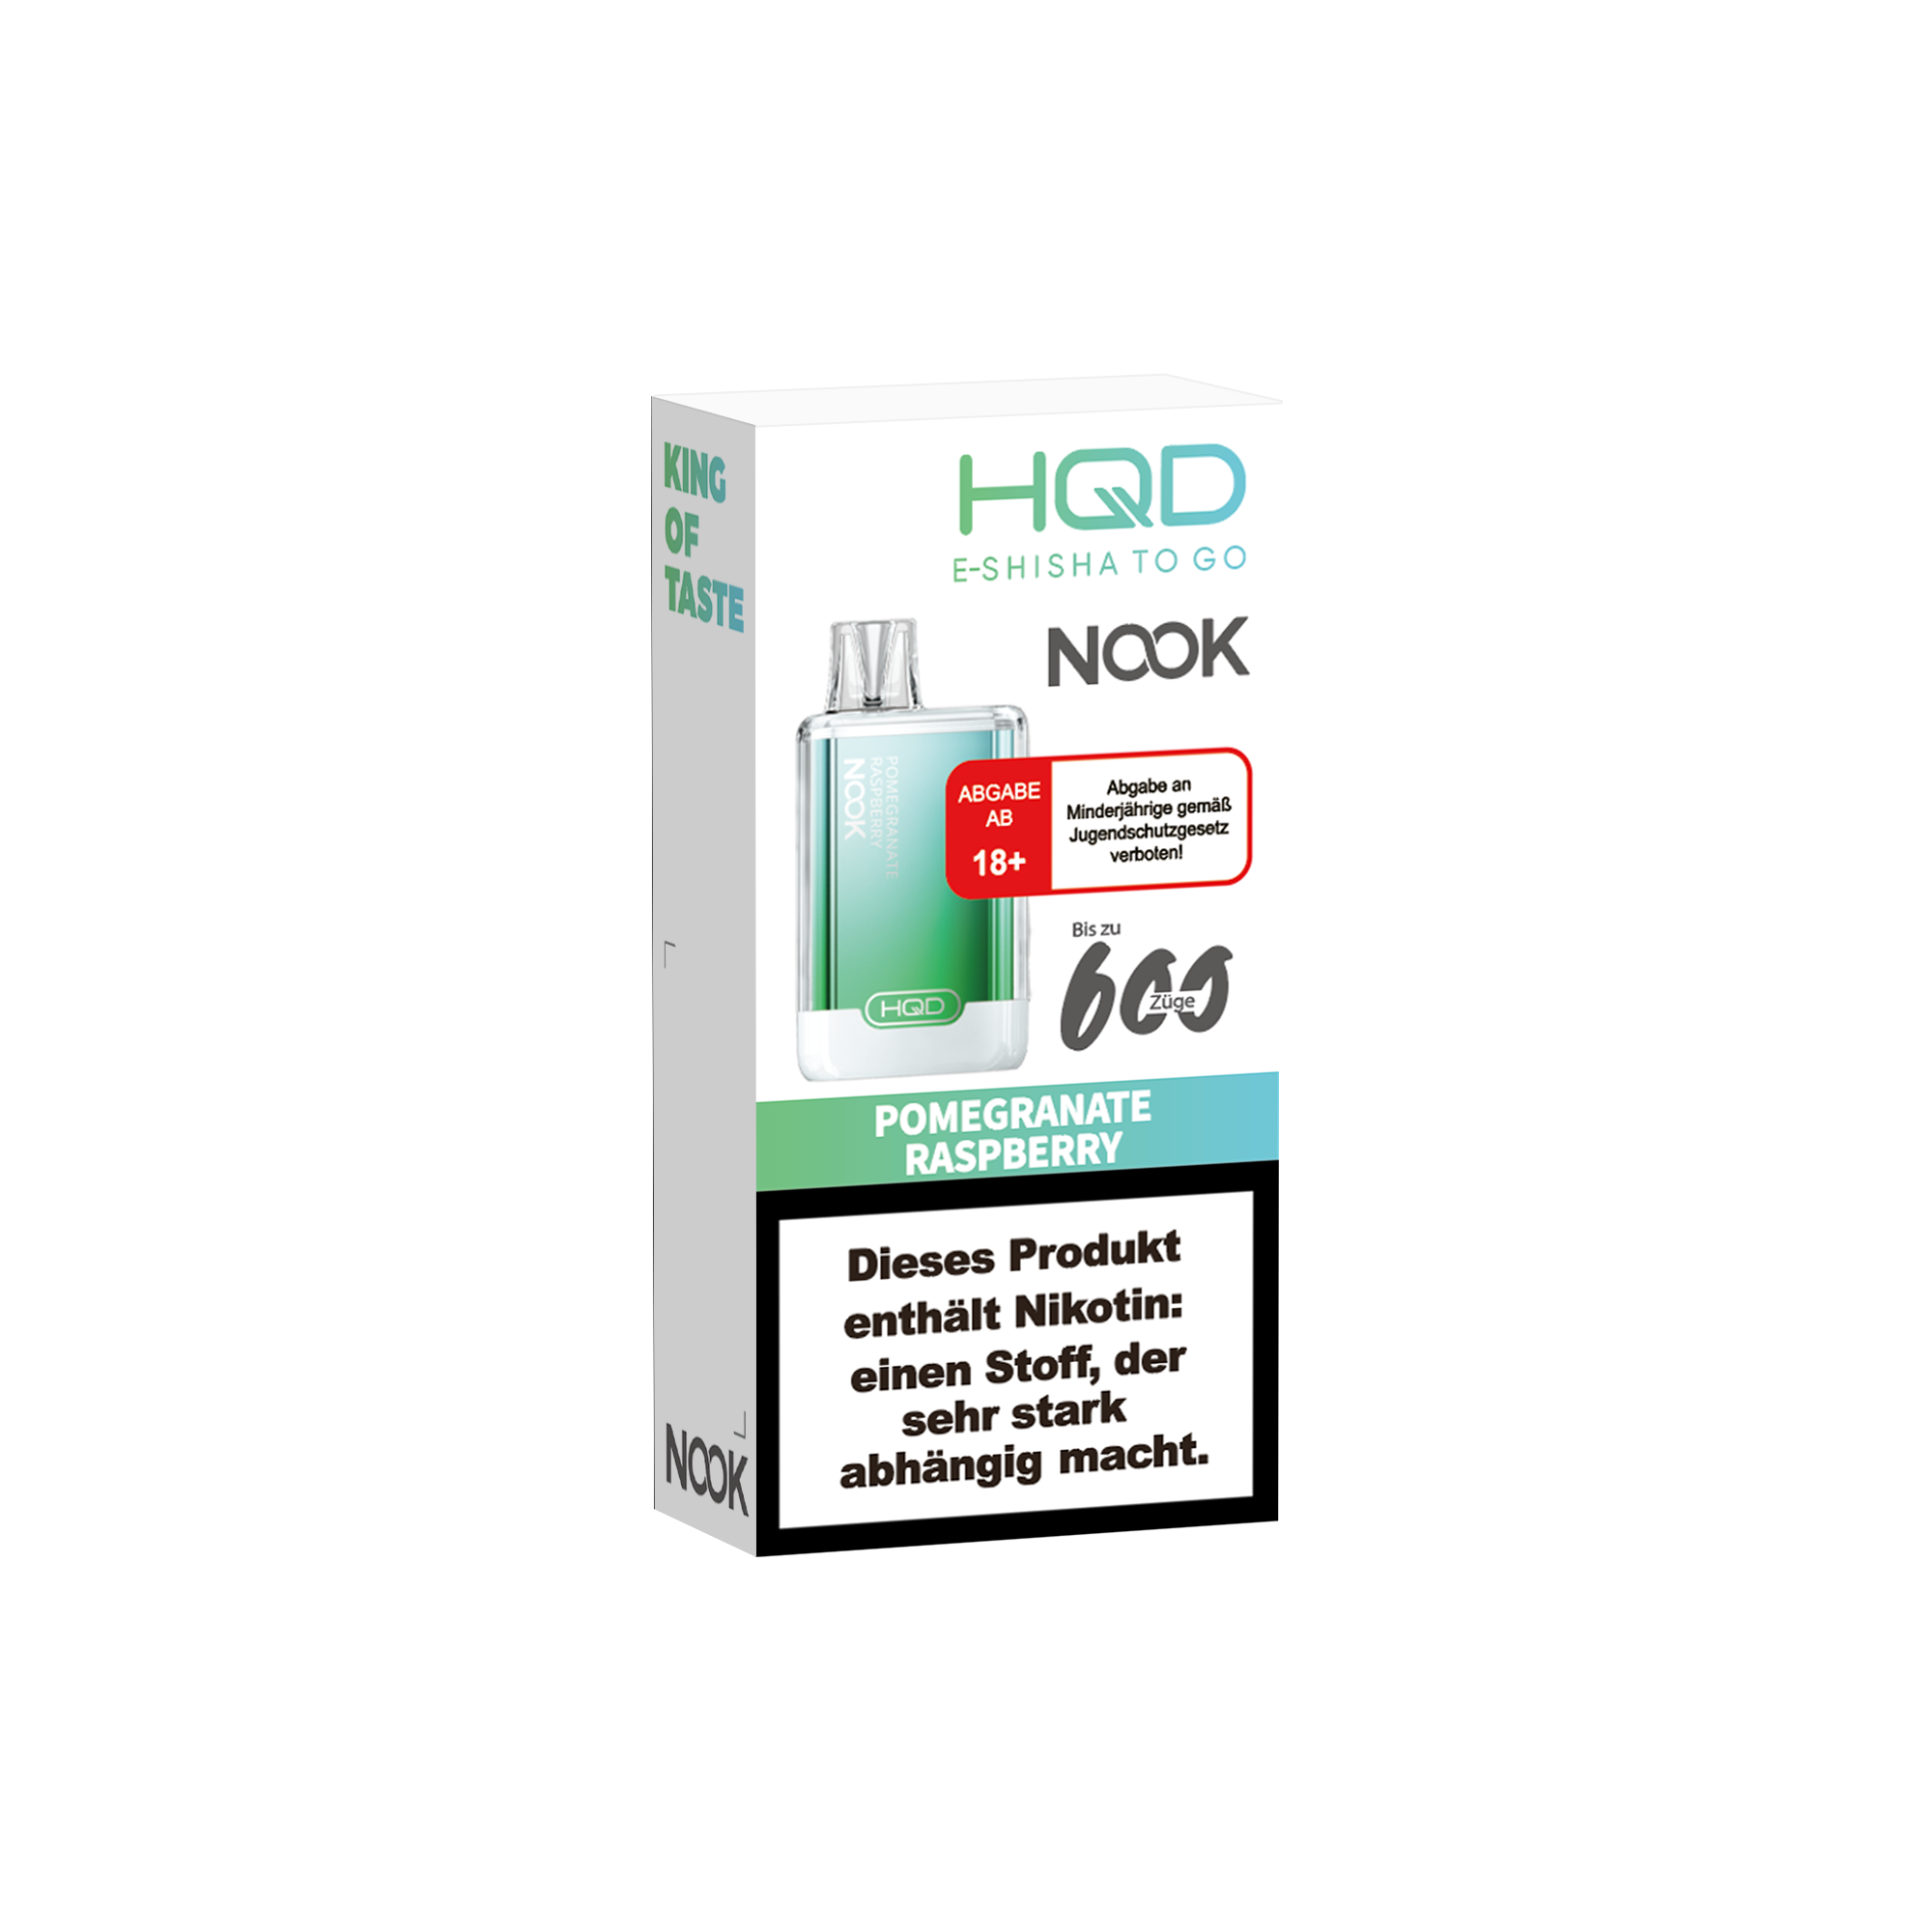 E-Zigarette HQD Nook POMEGRANATE RASPBERRY 18mg Nikotin 600